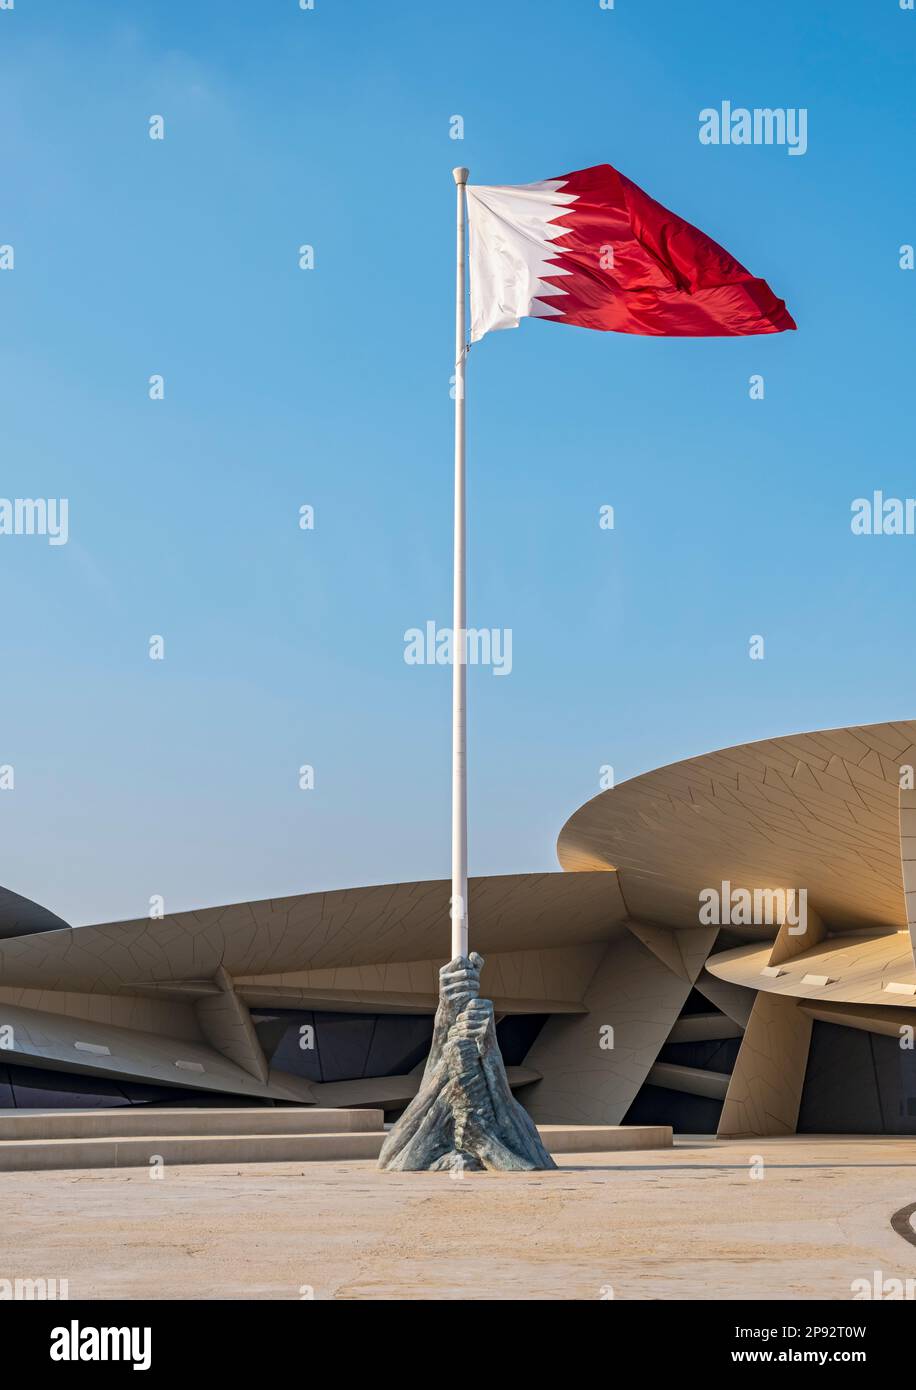 Sculpture du drapeau de gloire, Musée national du Qatar, Doha Banque D'Images